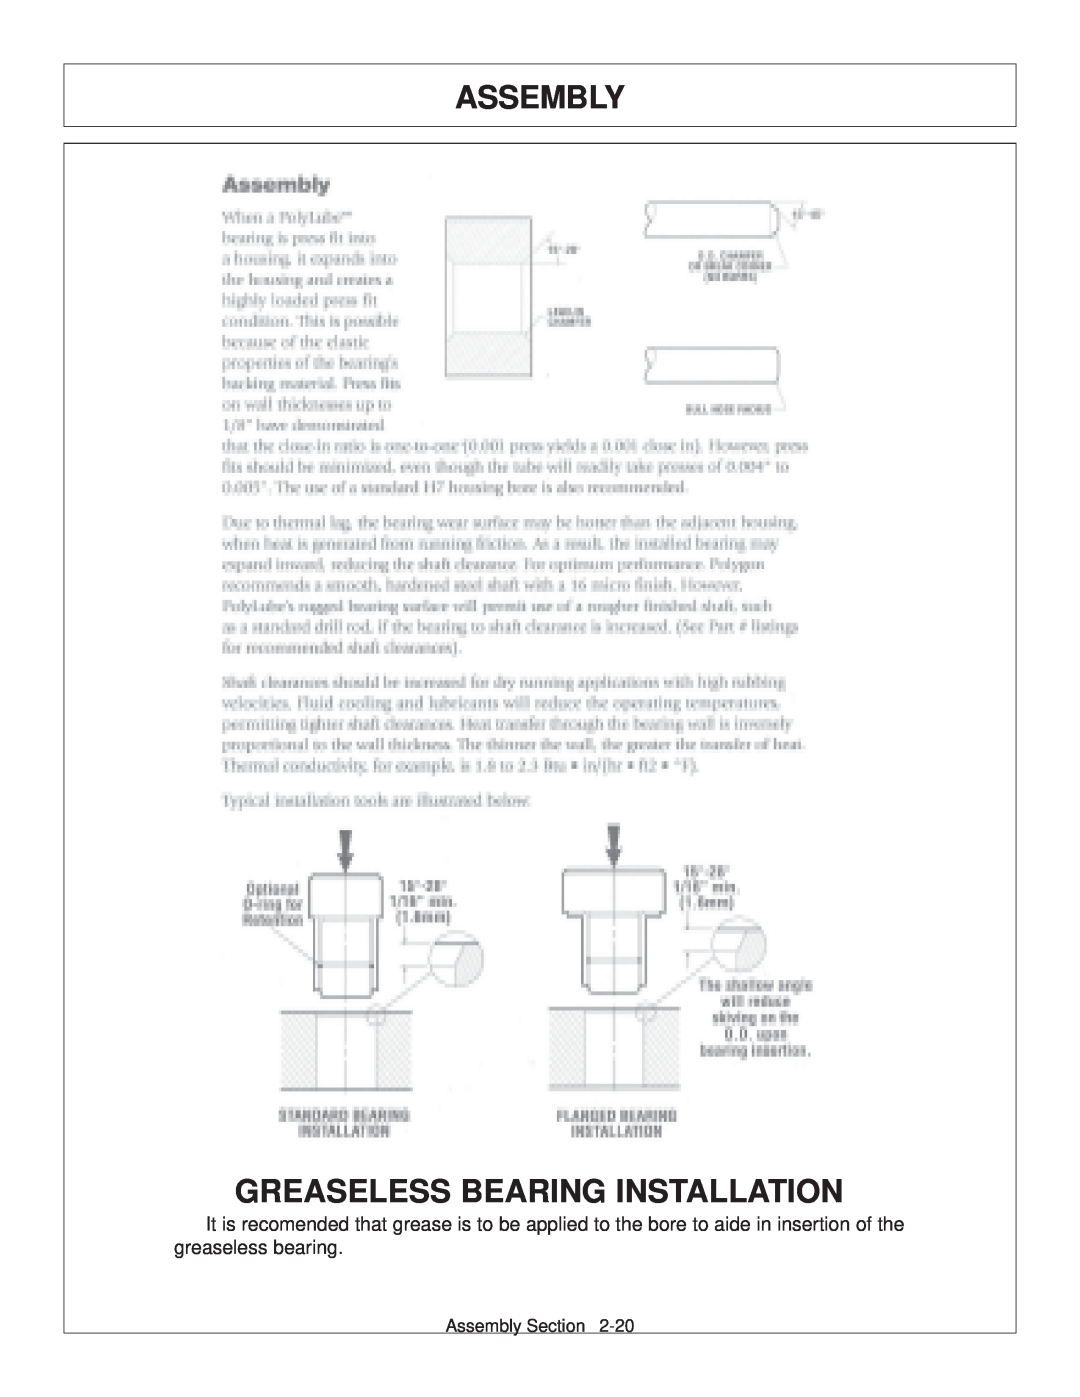 Tiger JD 62-6420 manual Greaseless Bearing Installation, Assembly 